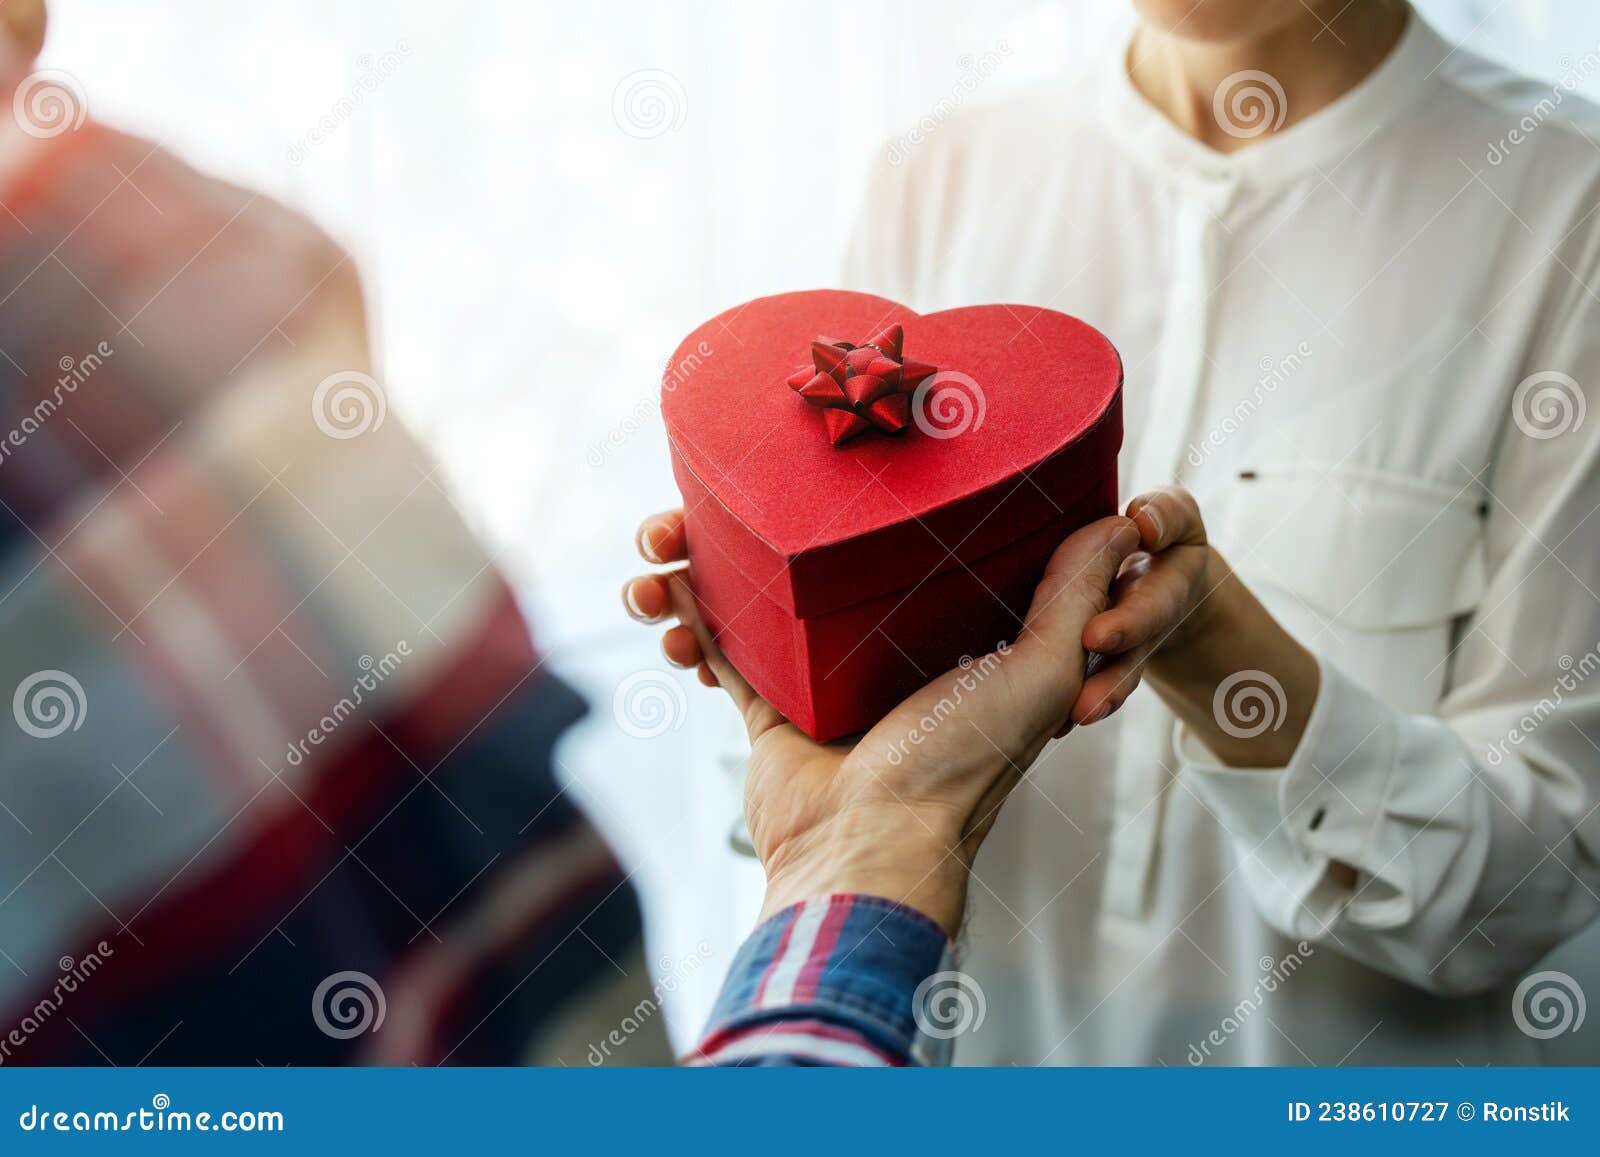 Día De San Valentín. Hombre Dando Caja De Regalo De Corazón Romántico a Su  Mujer Imagen de archivo - Imagen de amor, casero: 238610727